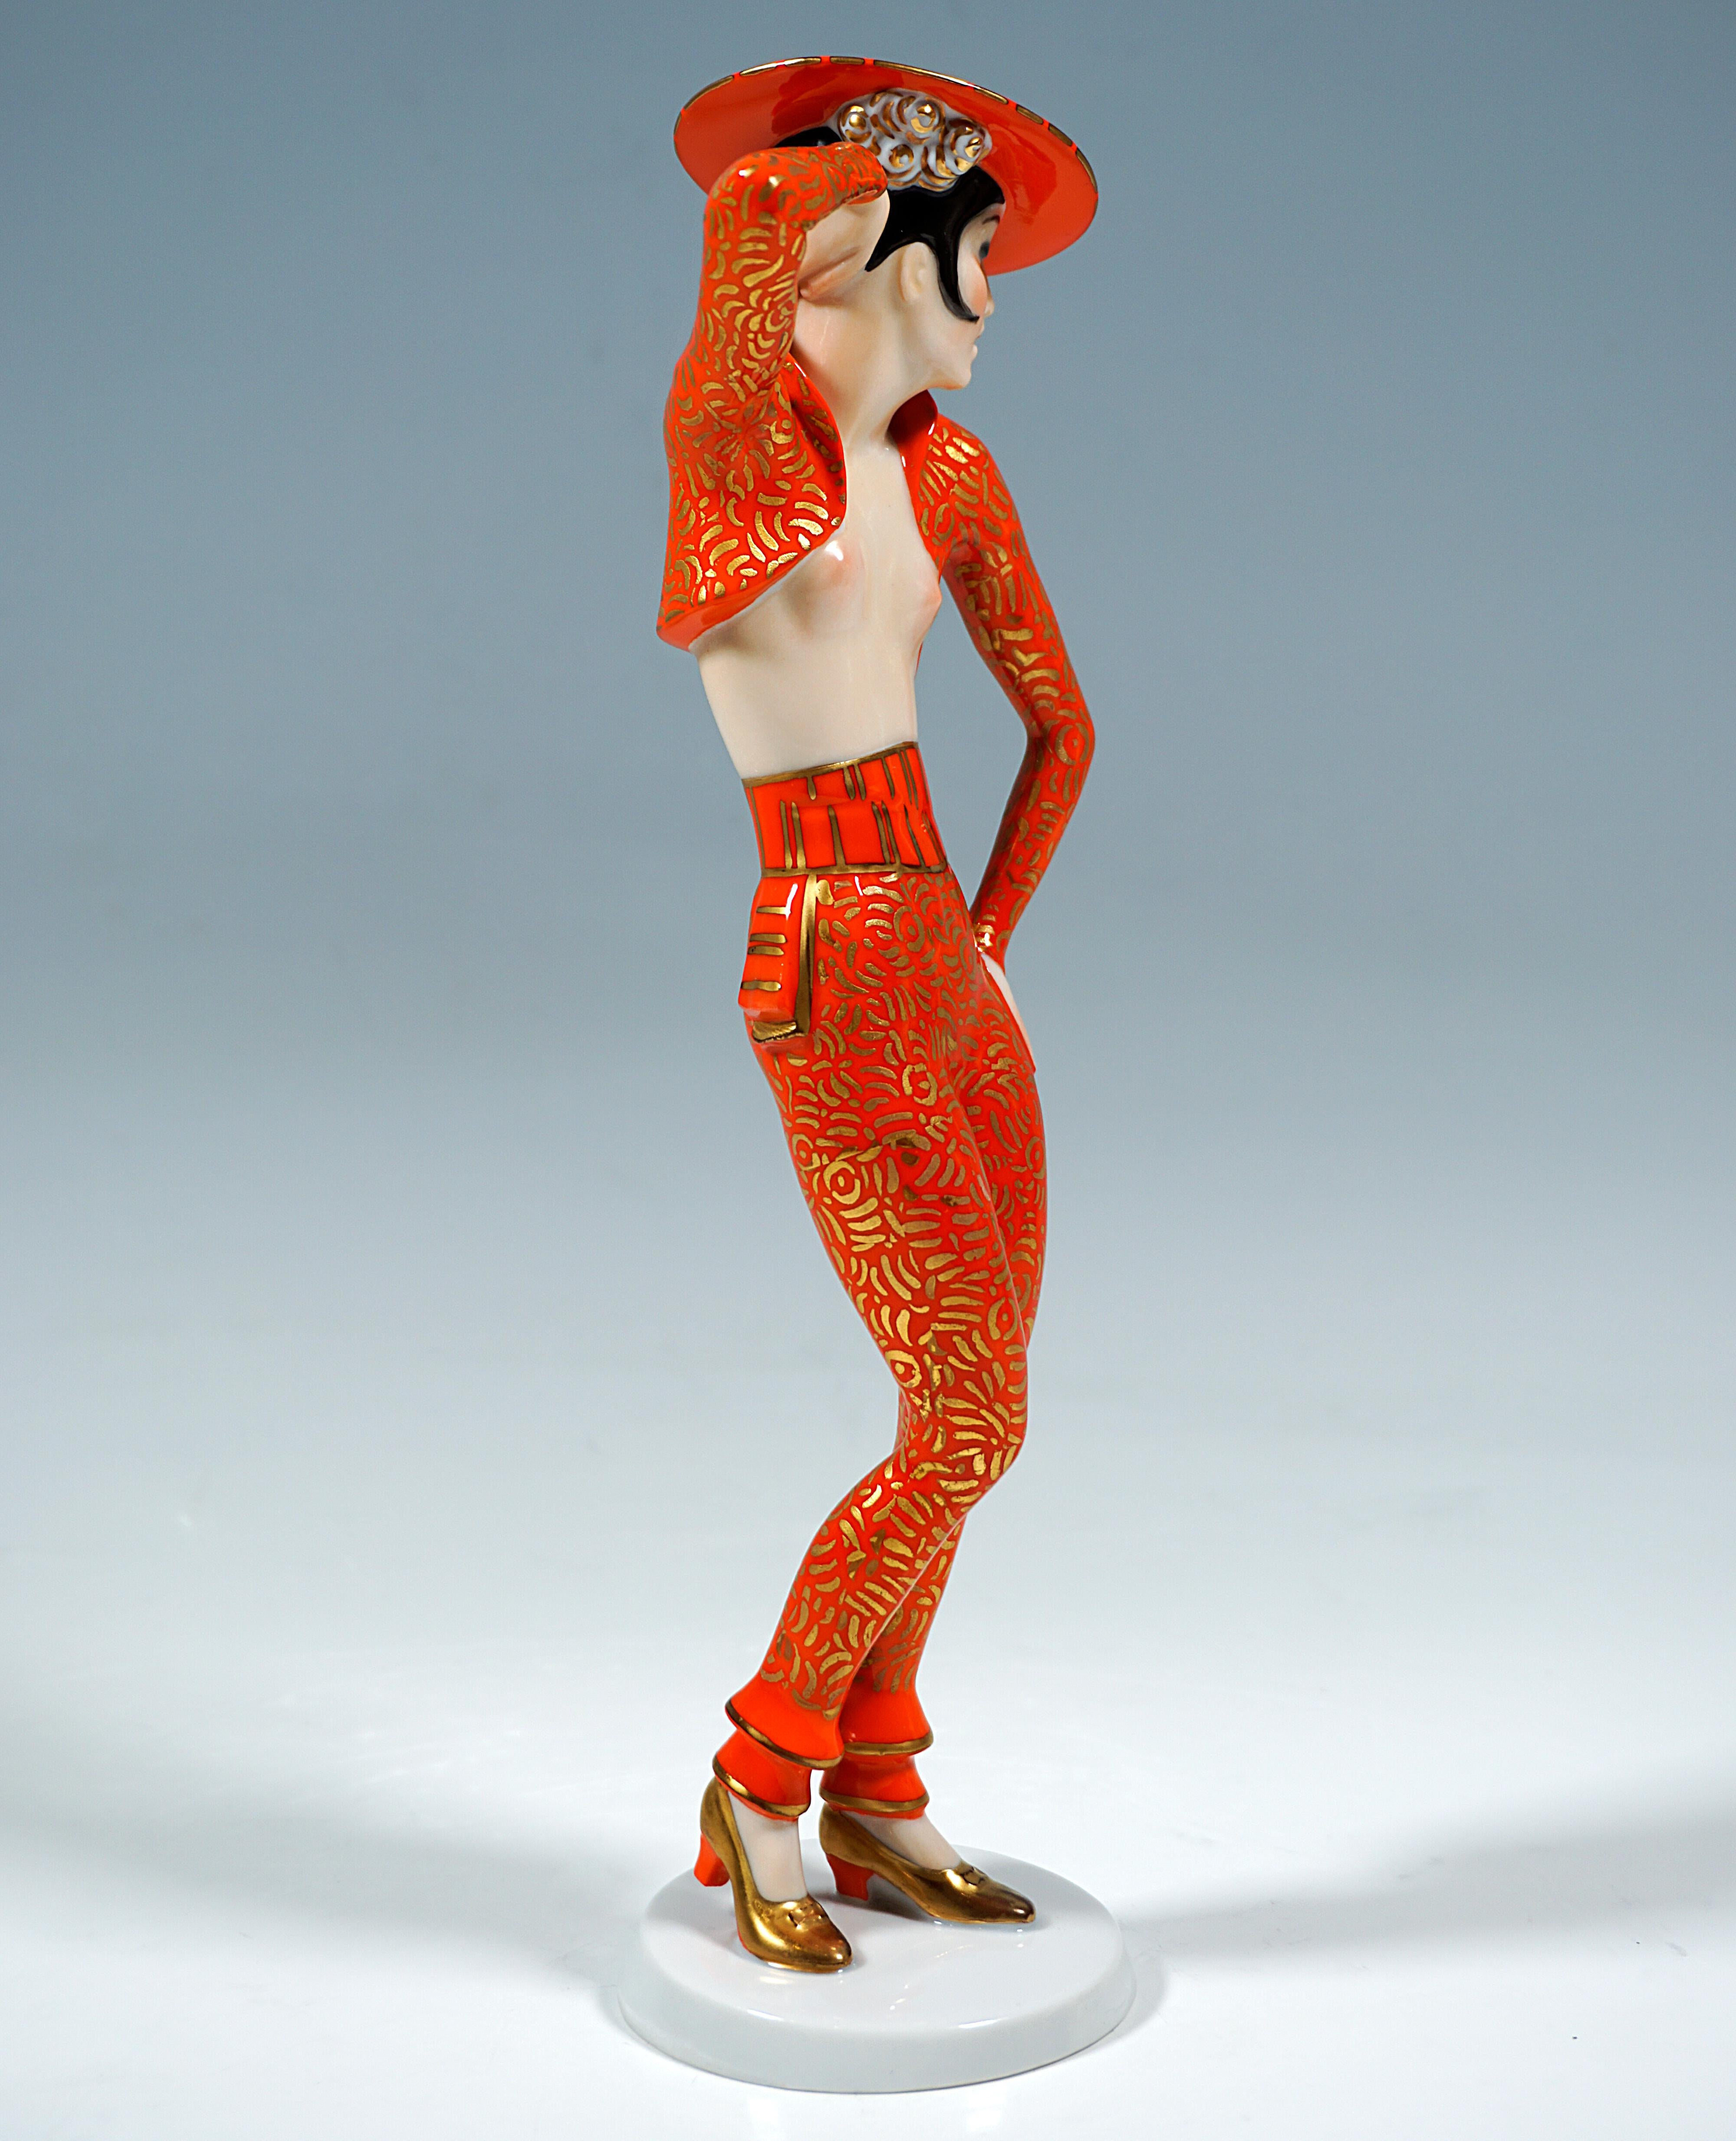 Bewundernswerte Rosenthal-Figur von Wolfgang Schwartzkopff:
Spanische Tänzerin in Pose, mit der rechten erhobenen Hand den von hinten nach links gedrehten Kopf stützend und über die linke Schulter blickend, gekleidet in der Manier eines spanischen